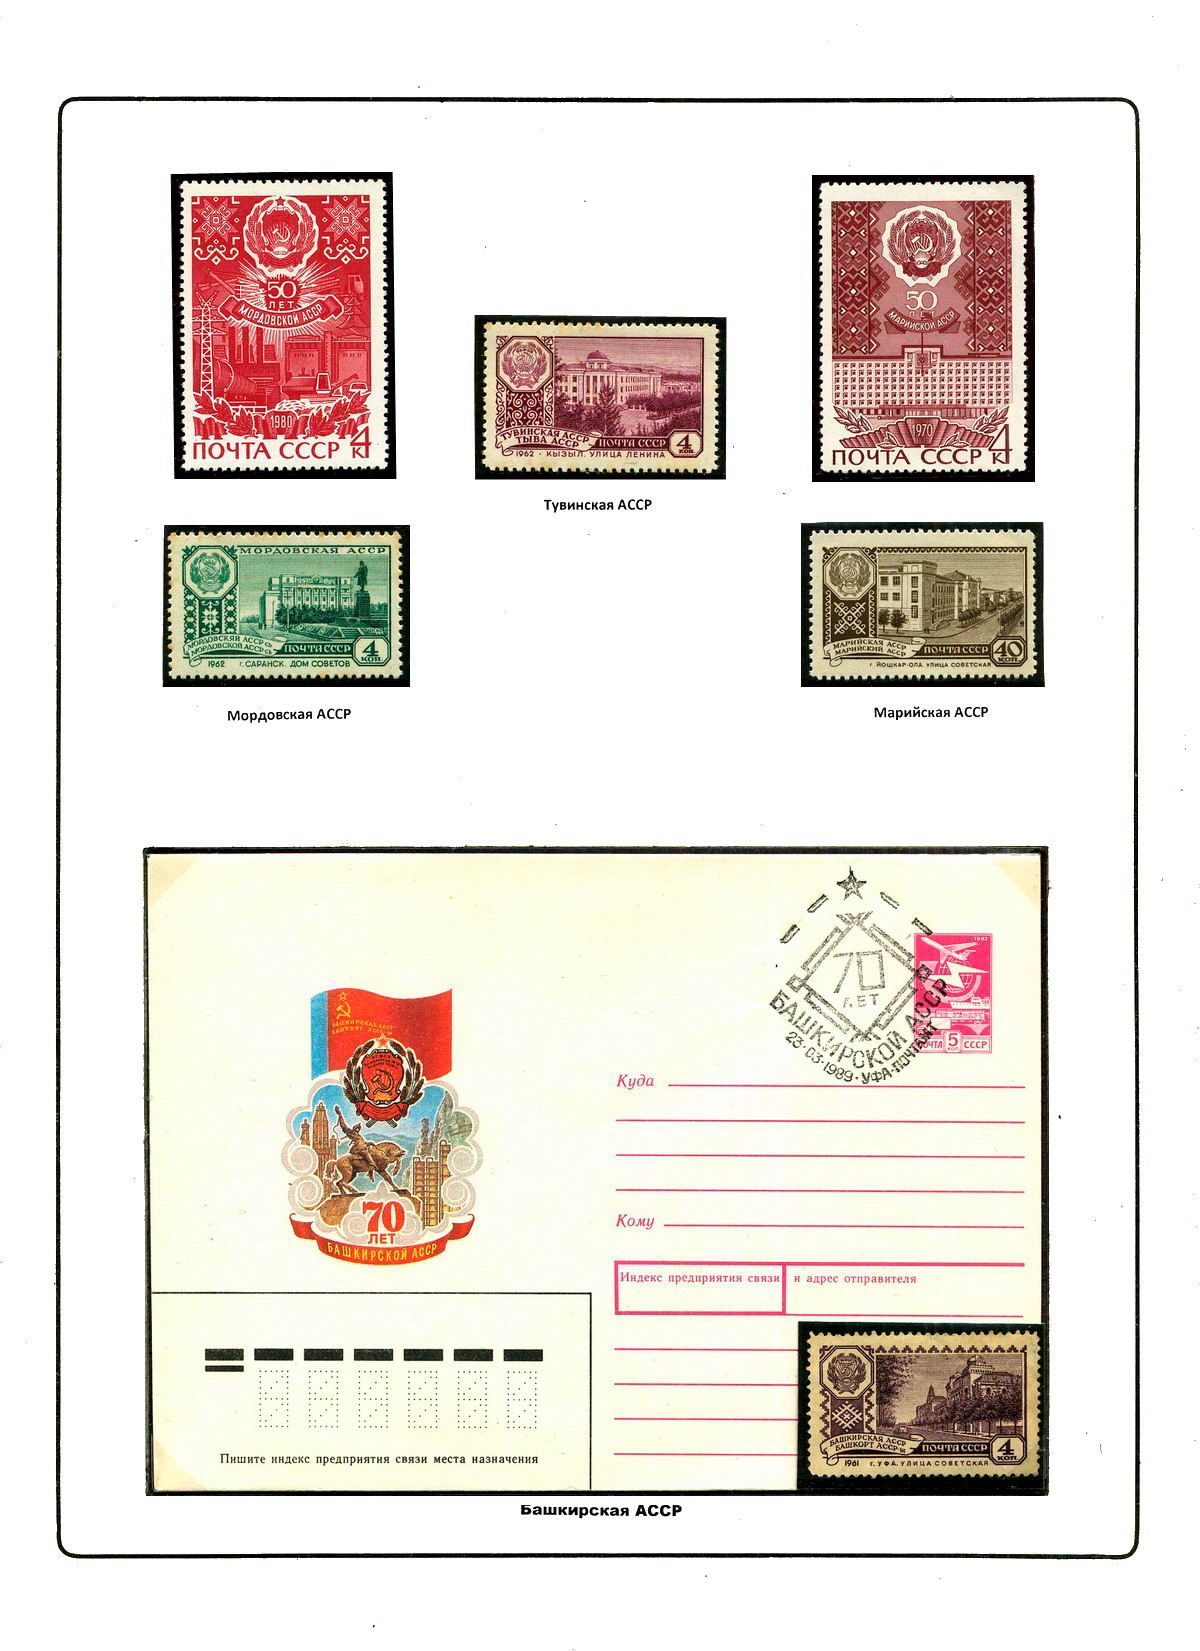 Гербы стран и городов на почтовых марках Англия Шотландия Геральдика в филателии